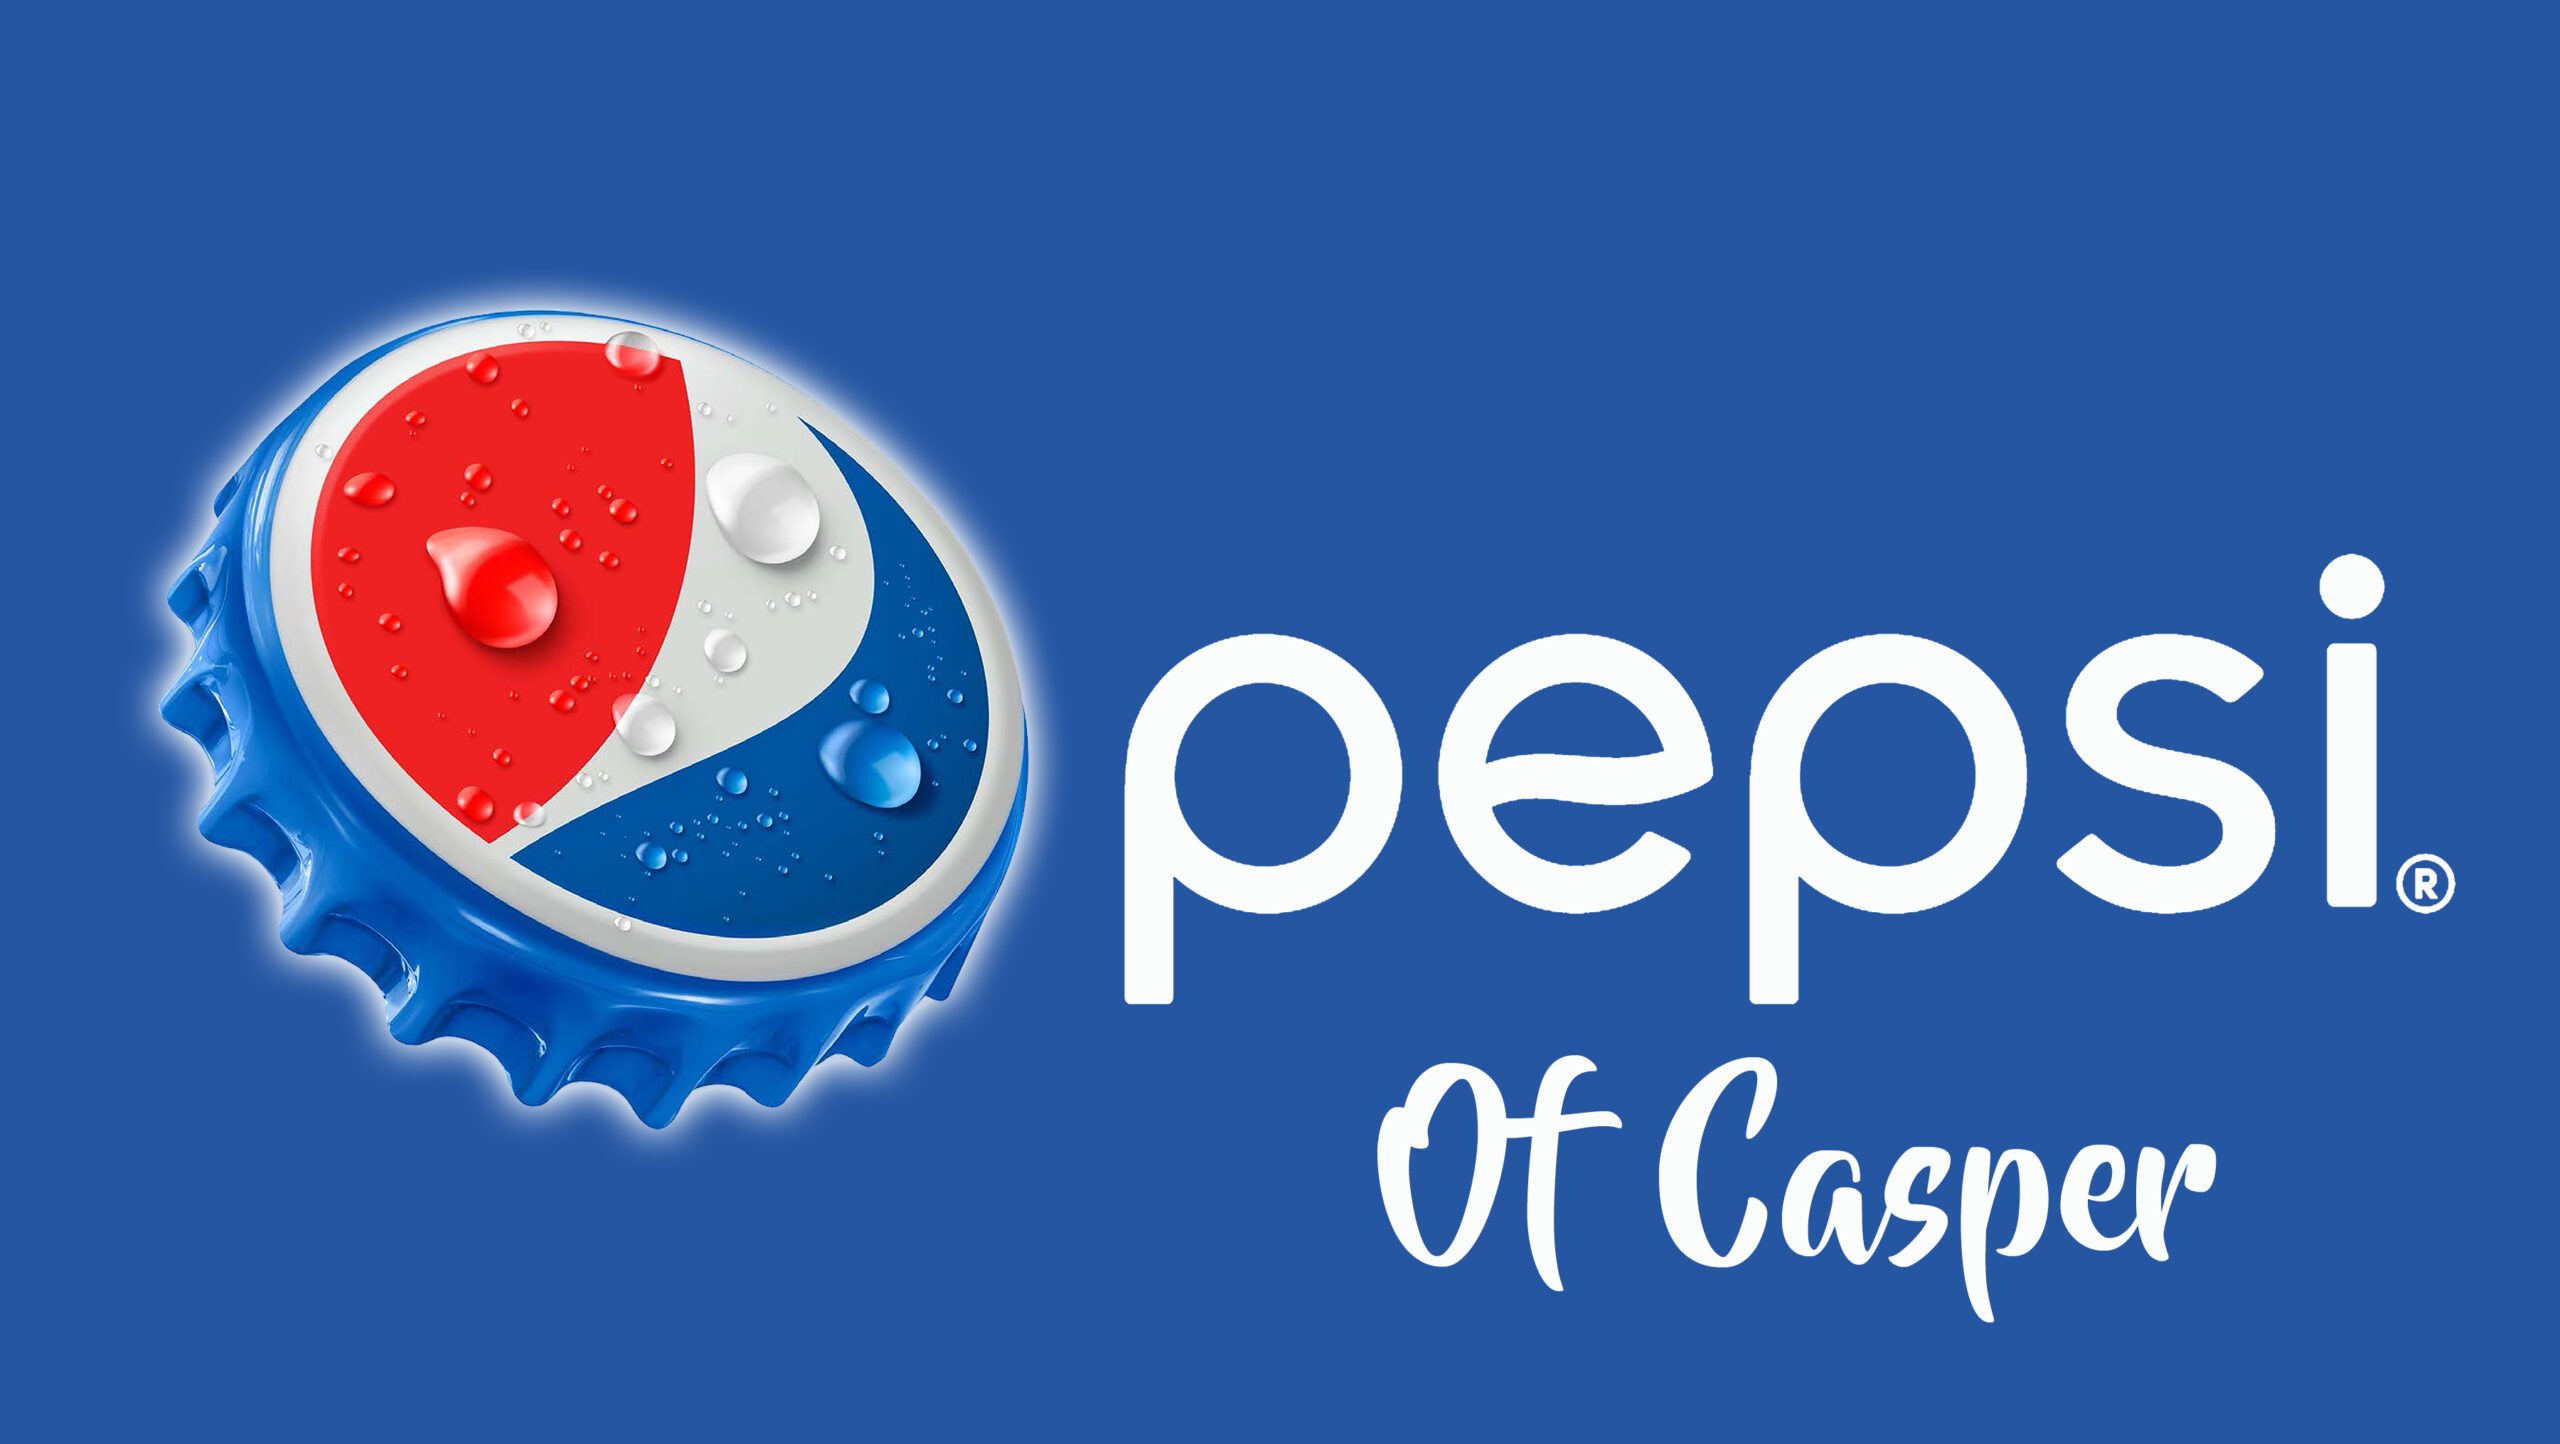 bottlecap logo with pepsi casper